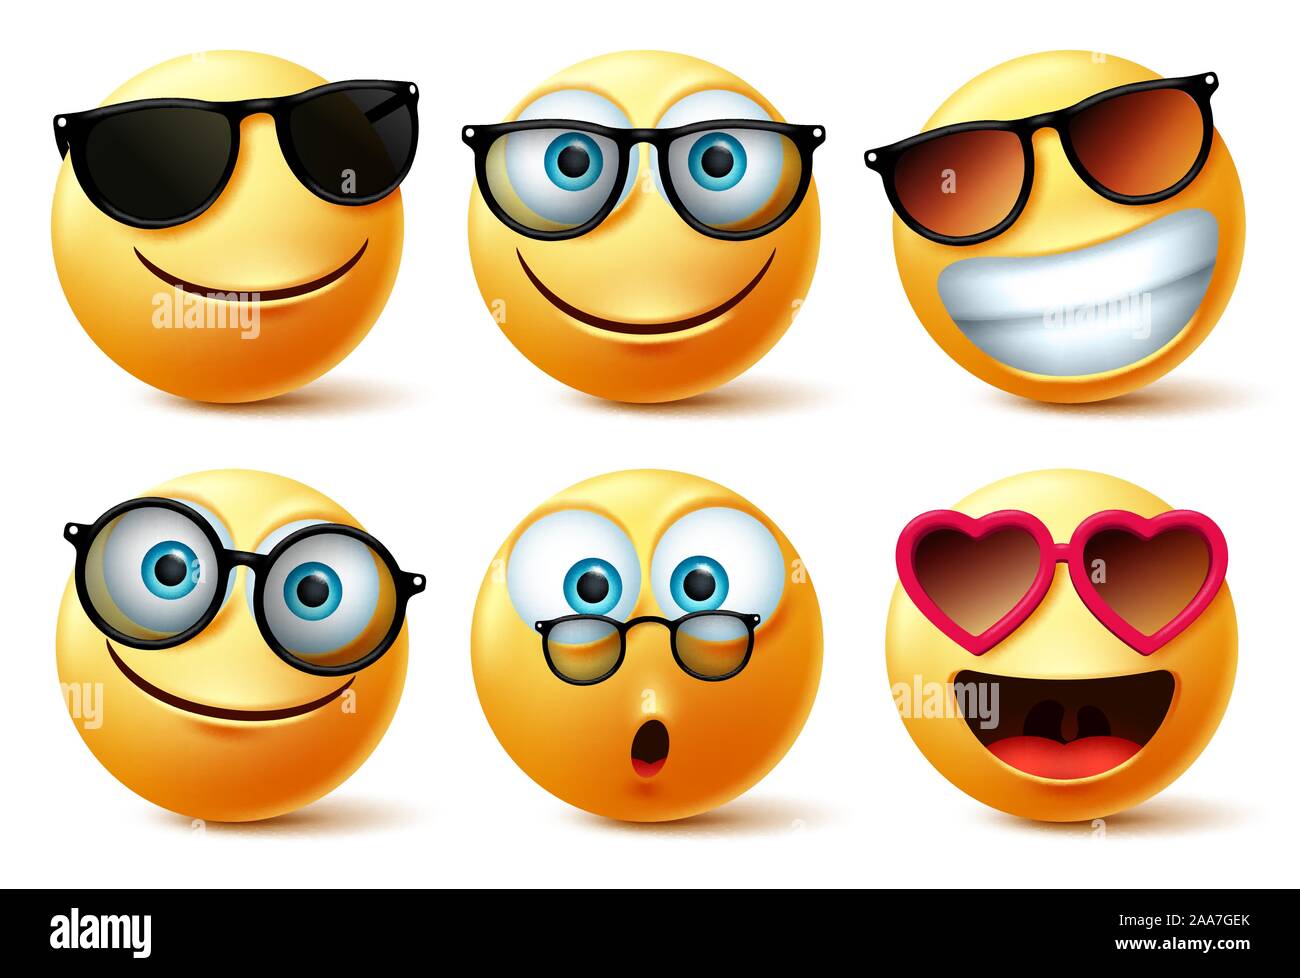 Smileys emoji or emoticon faces wearing sunglasses and eyeglasses vector set. Smileys emoticons or icon face head in surprise, cute, happy. Stock Vector